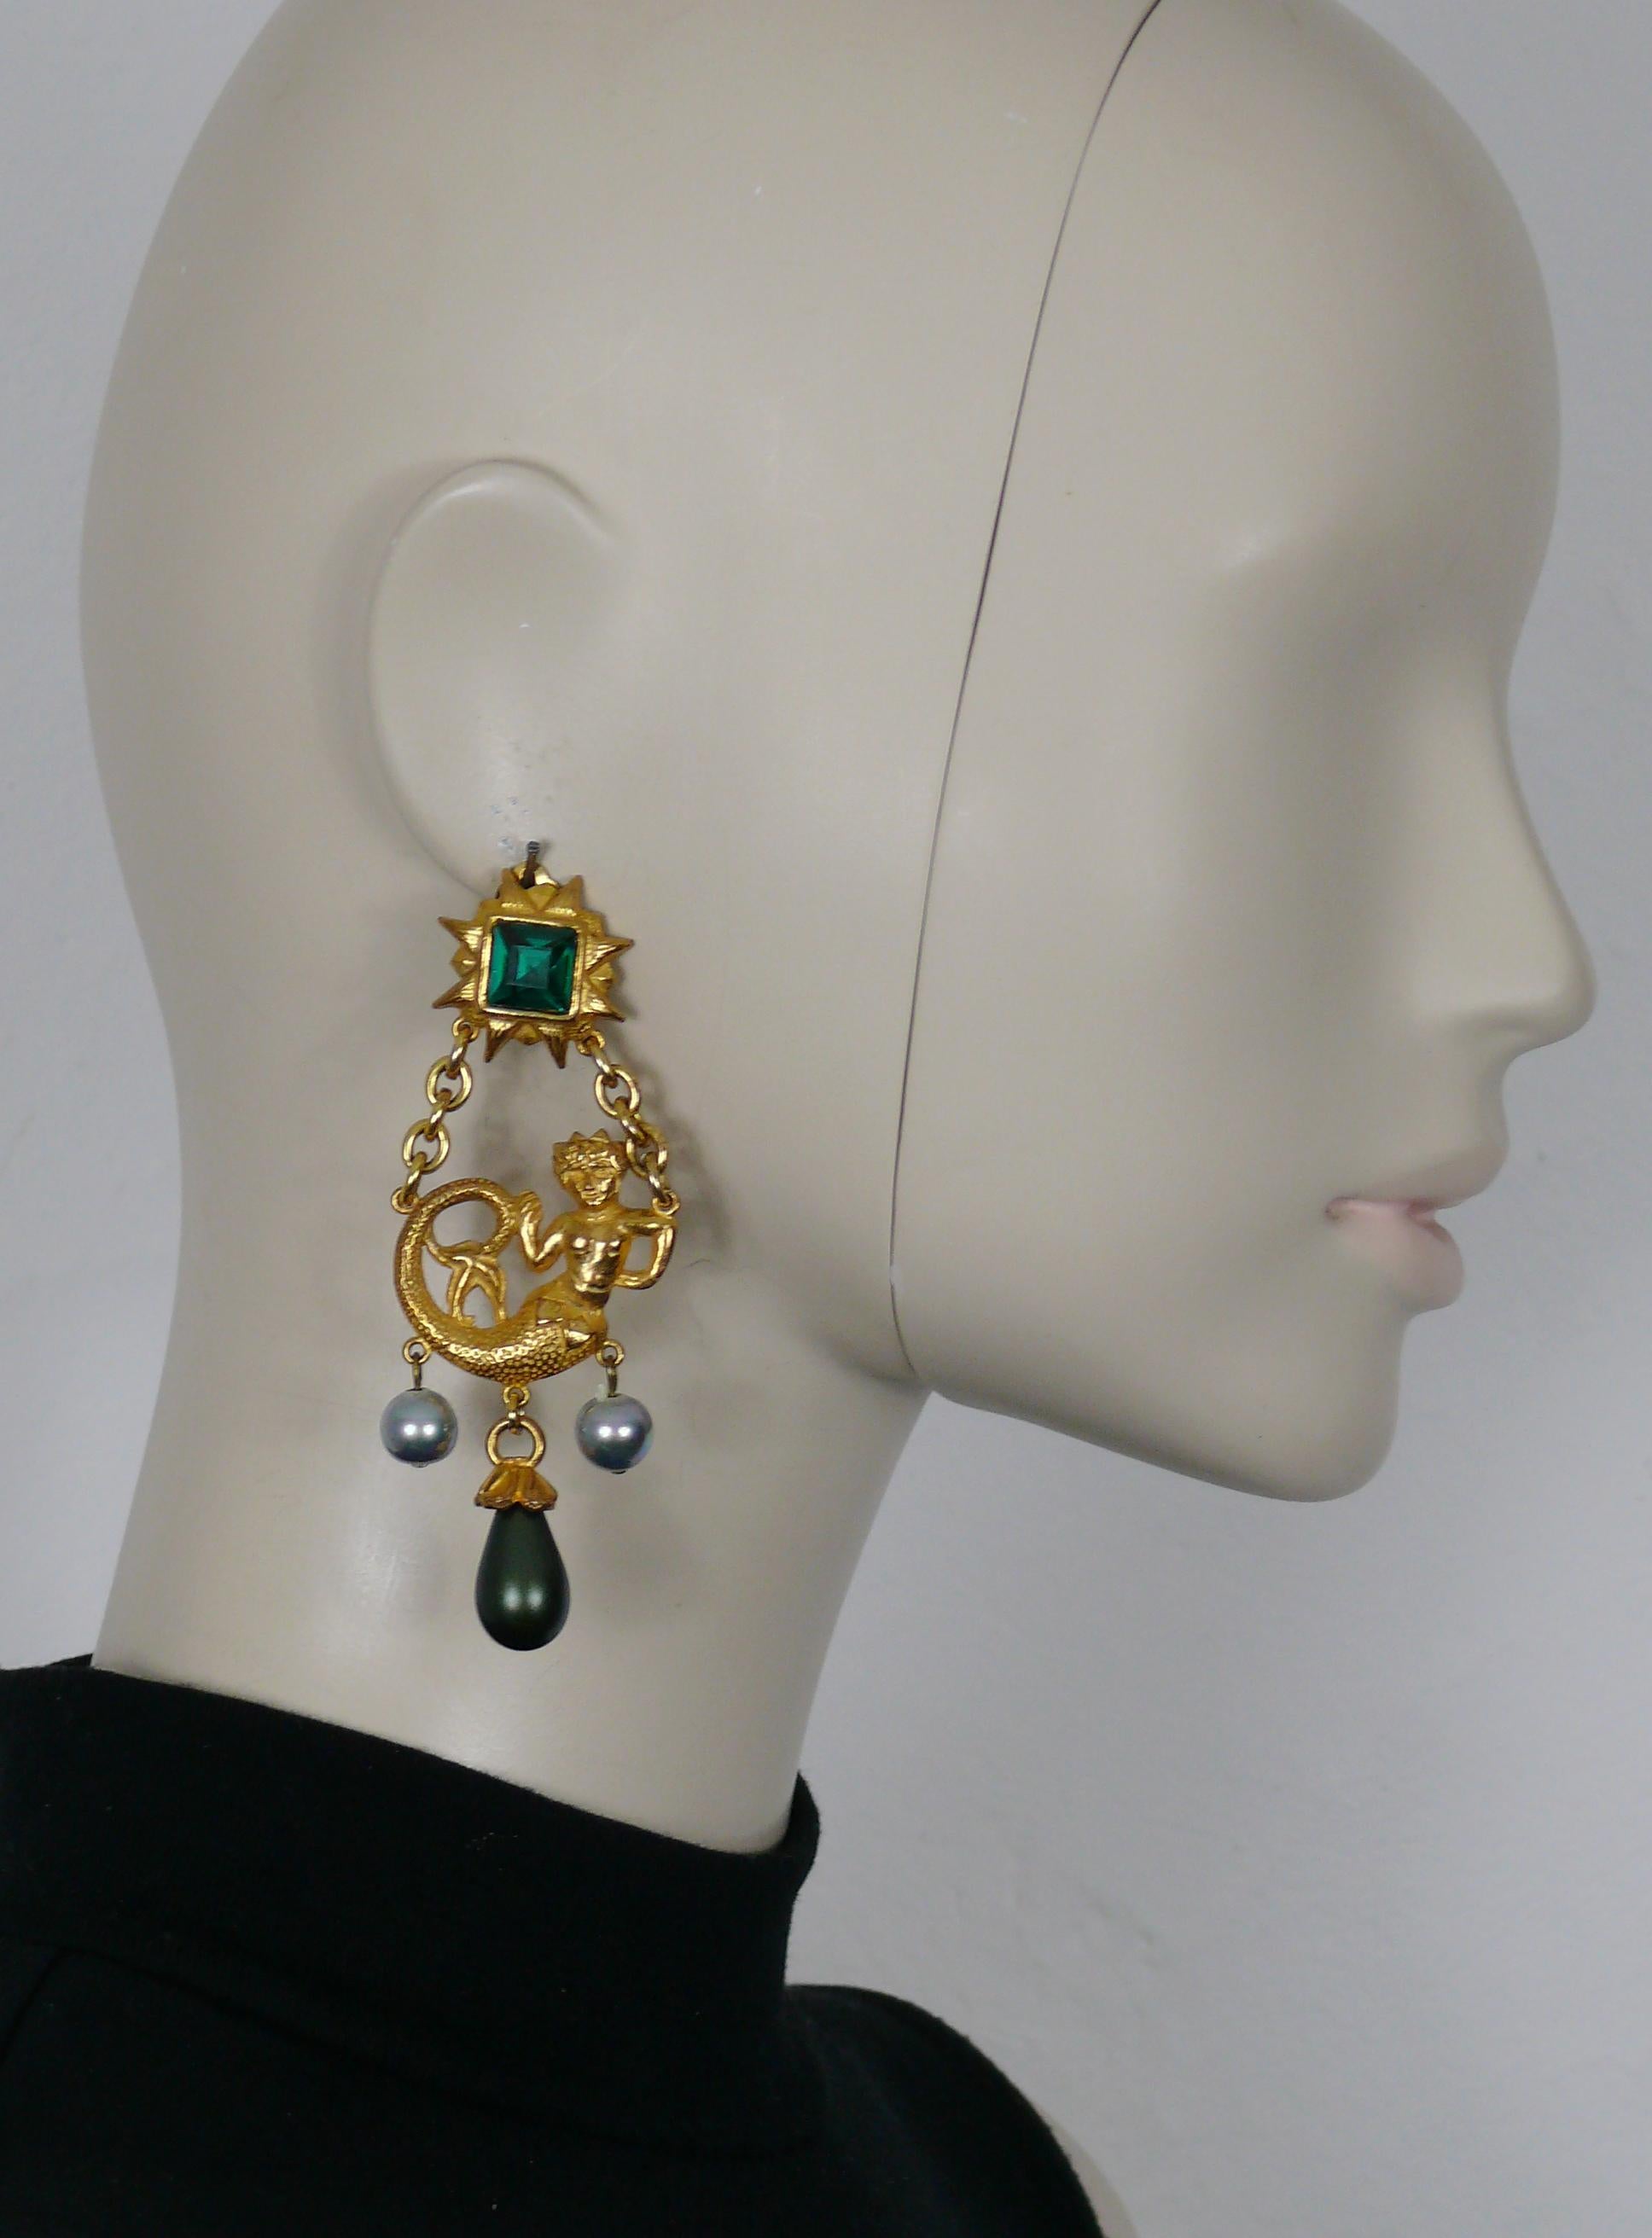 YVES SAINT LAURENT Vintage, seltene goldfarbene Ohrringe (Clip) mit einer Meerjungfrau, die von einer strahlenden Sonne gekrönt wird, verziert mit einem großen smaragdfarbenen Kristall, einer irisierenden grauen Glasimitatperle und einem Tropfen in